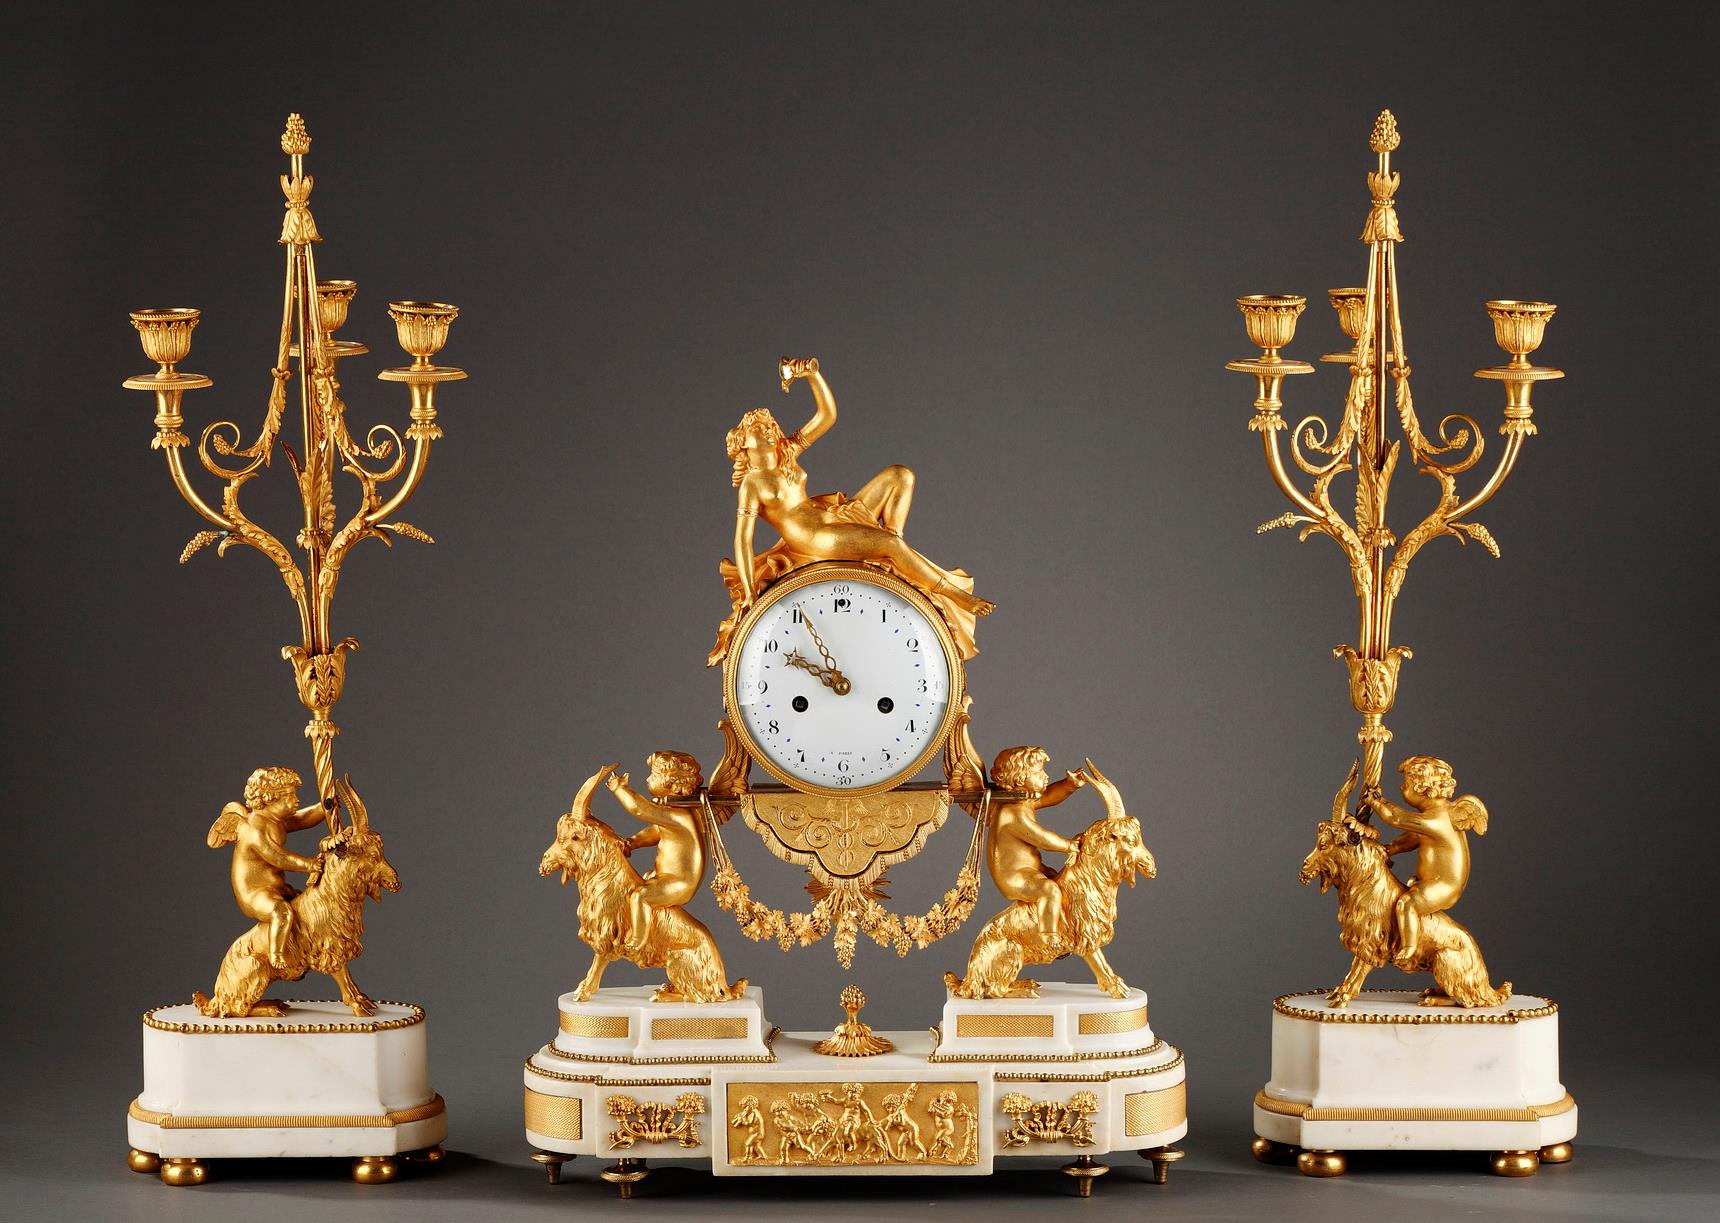 Mantel, set, clock, marble, white, gilt, bronze, bacchante, grappes, goals, Versailles, Marie-Antoinette, Louis XVI, horloge, clock, Louvre, Tardy, 18th century